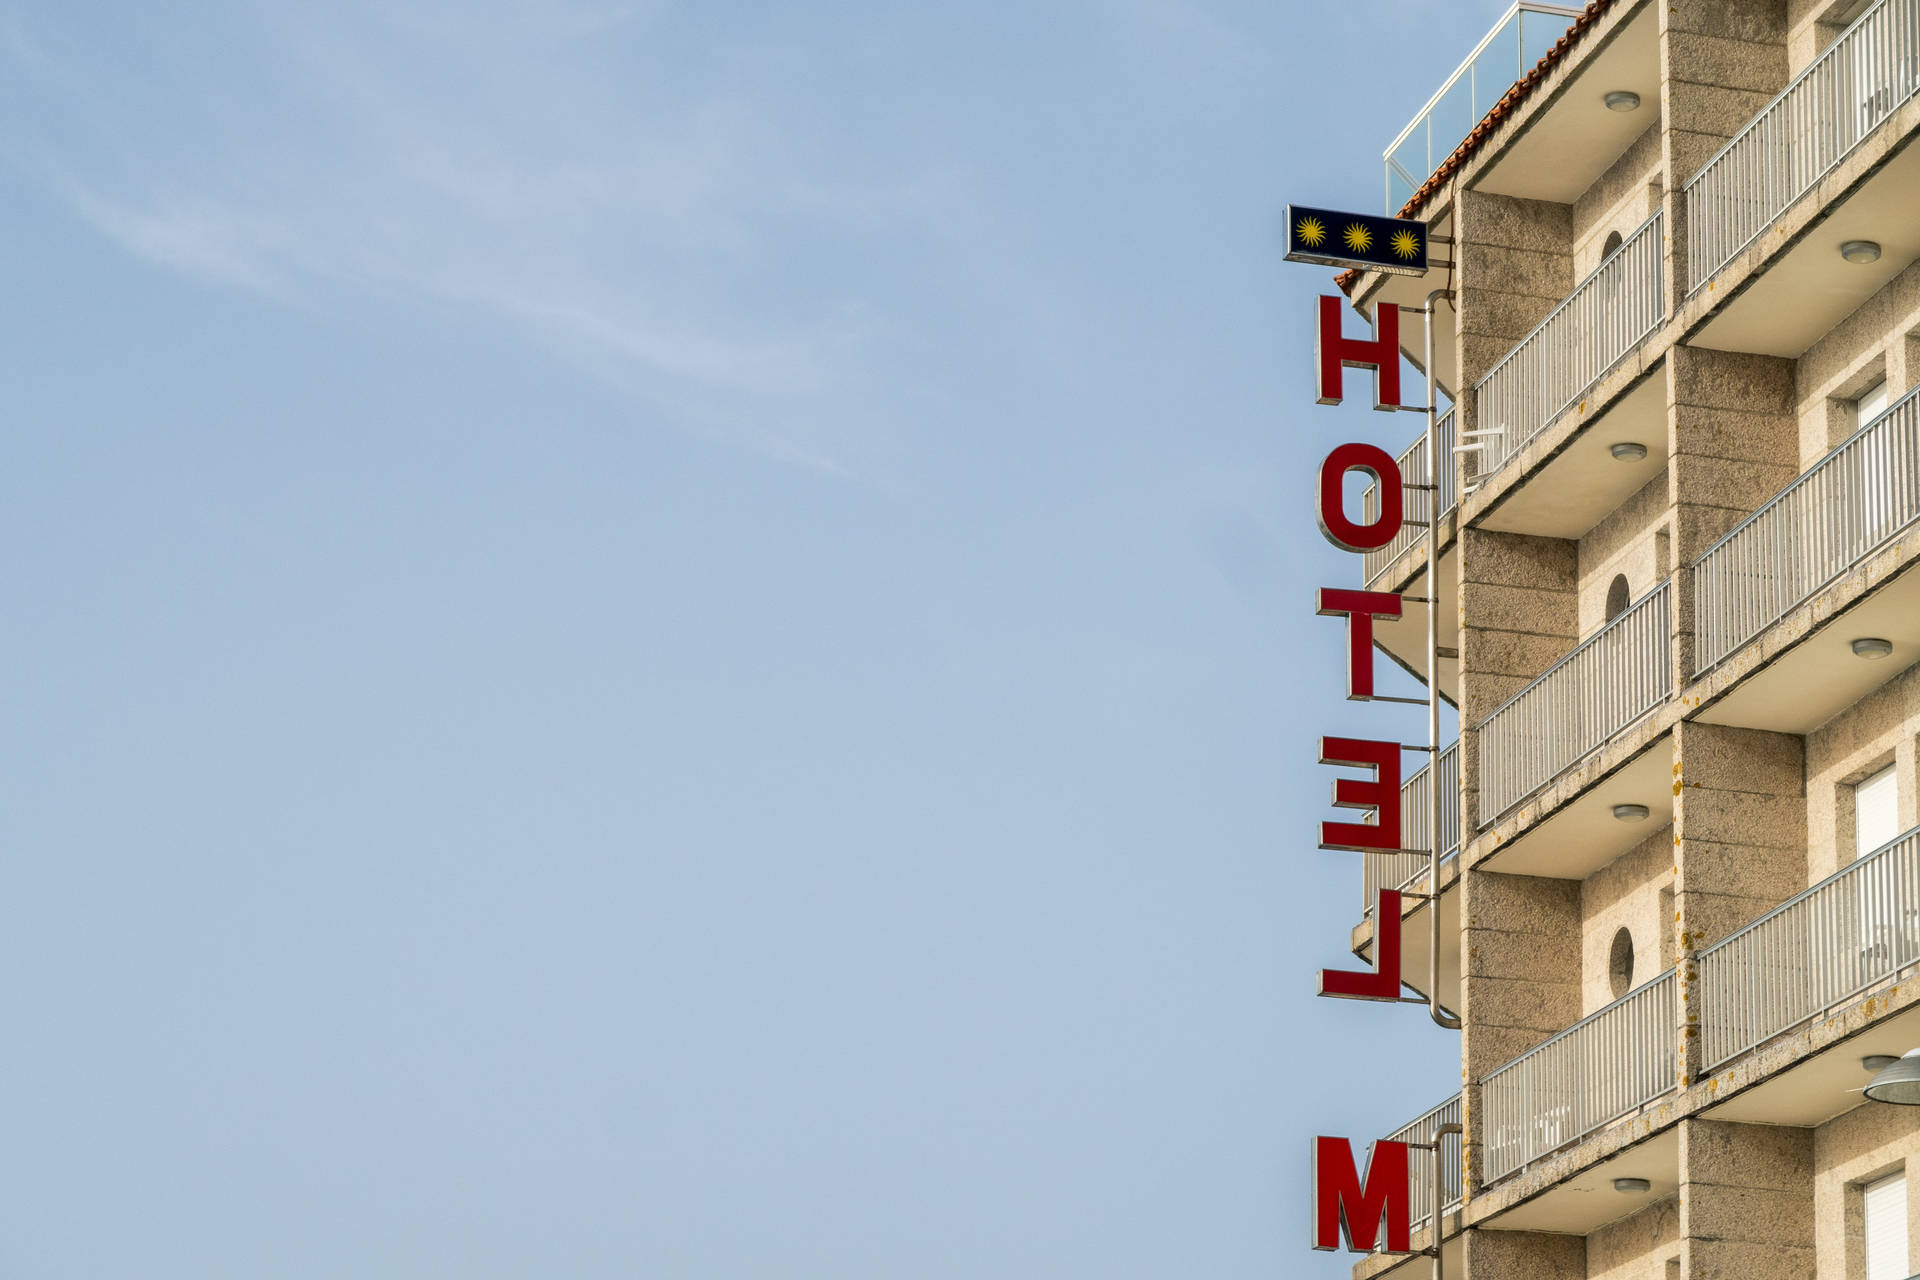 Tag billeder af din rejse i et simpelt tema med et kontrasterende hotel skilt. Wallpaper